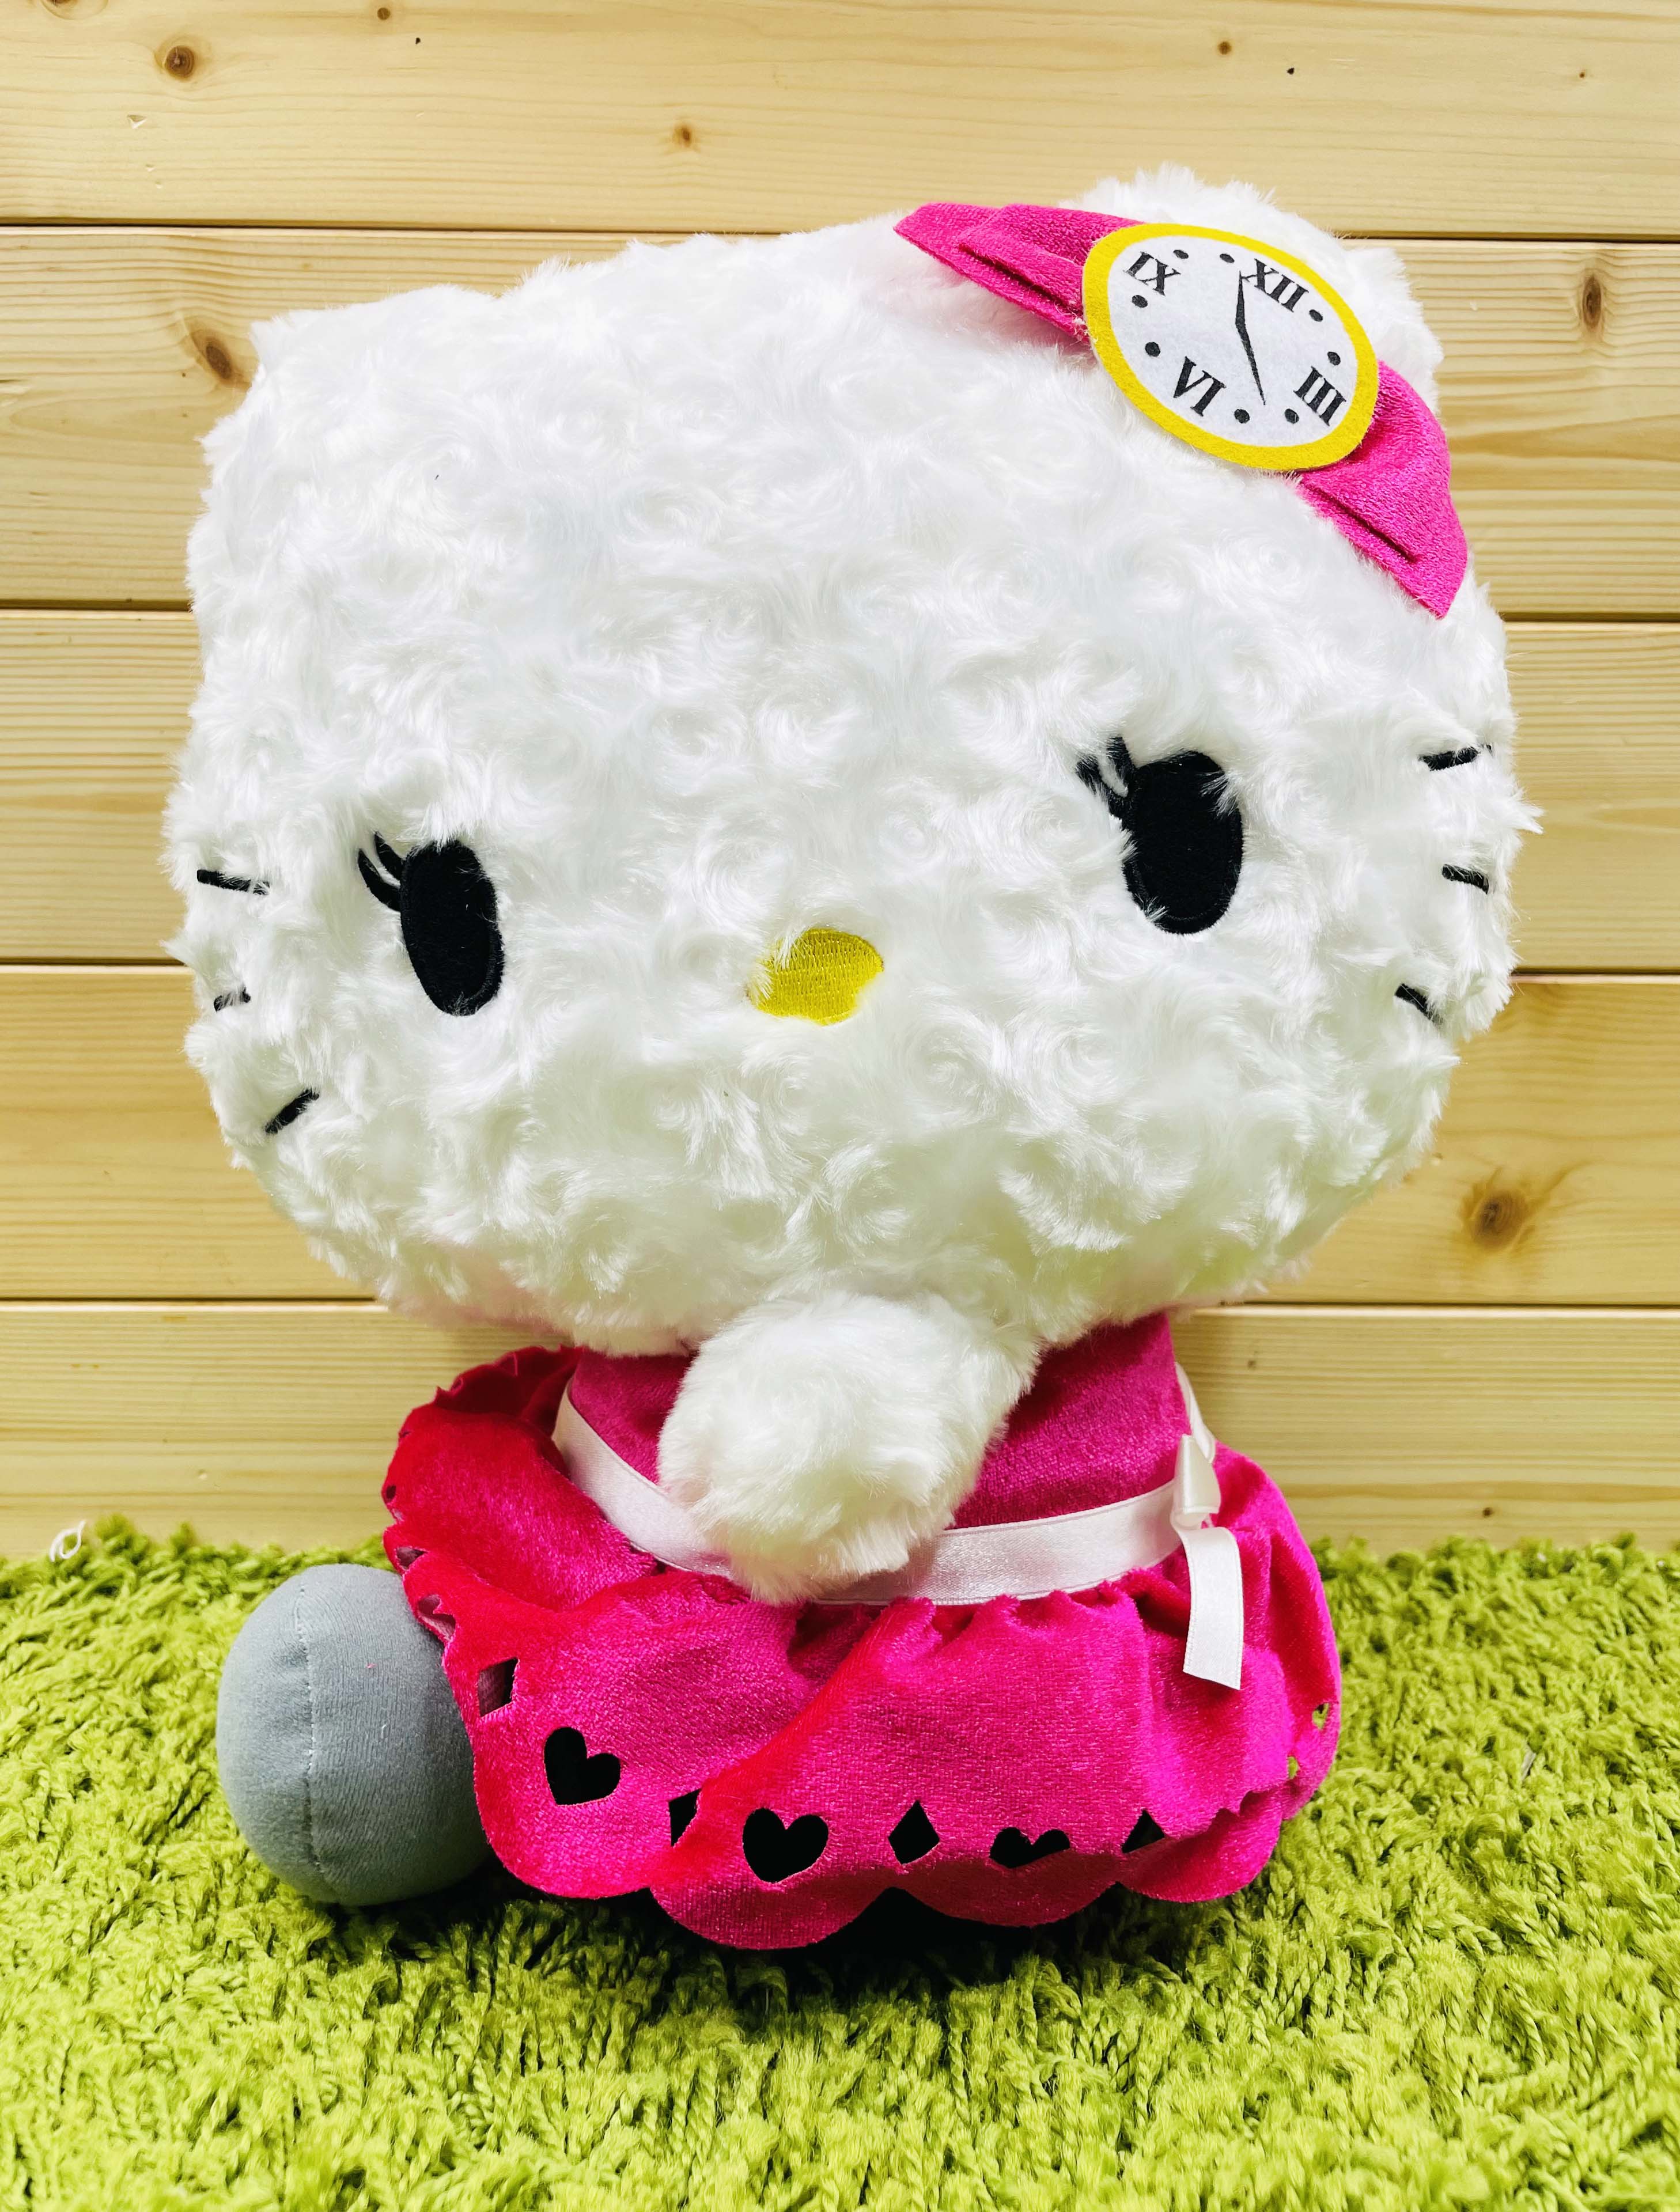 【震撼精品百貨】Hello Kitty 凱蒂貓~日本SANRIO三麗鷗 KITTY絨毛娃娃-不思議國*64700